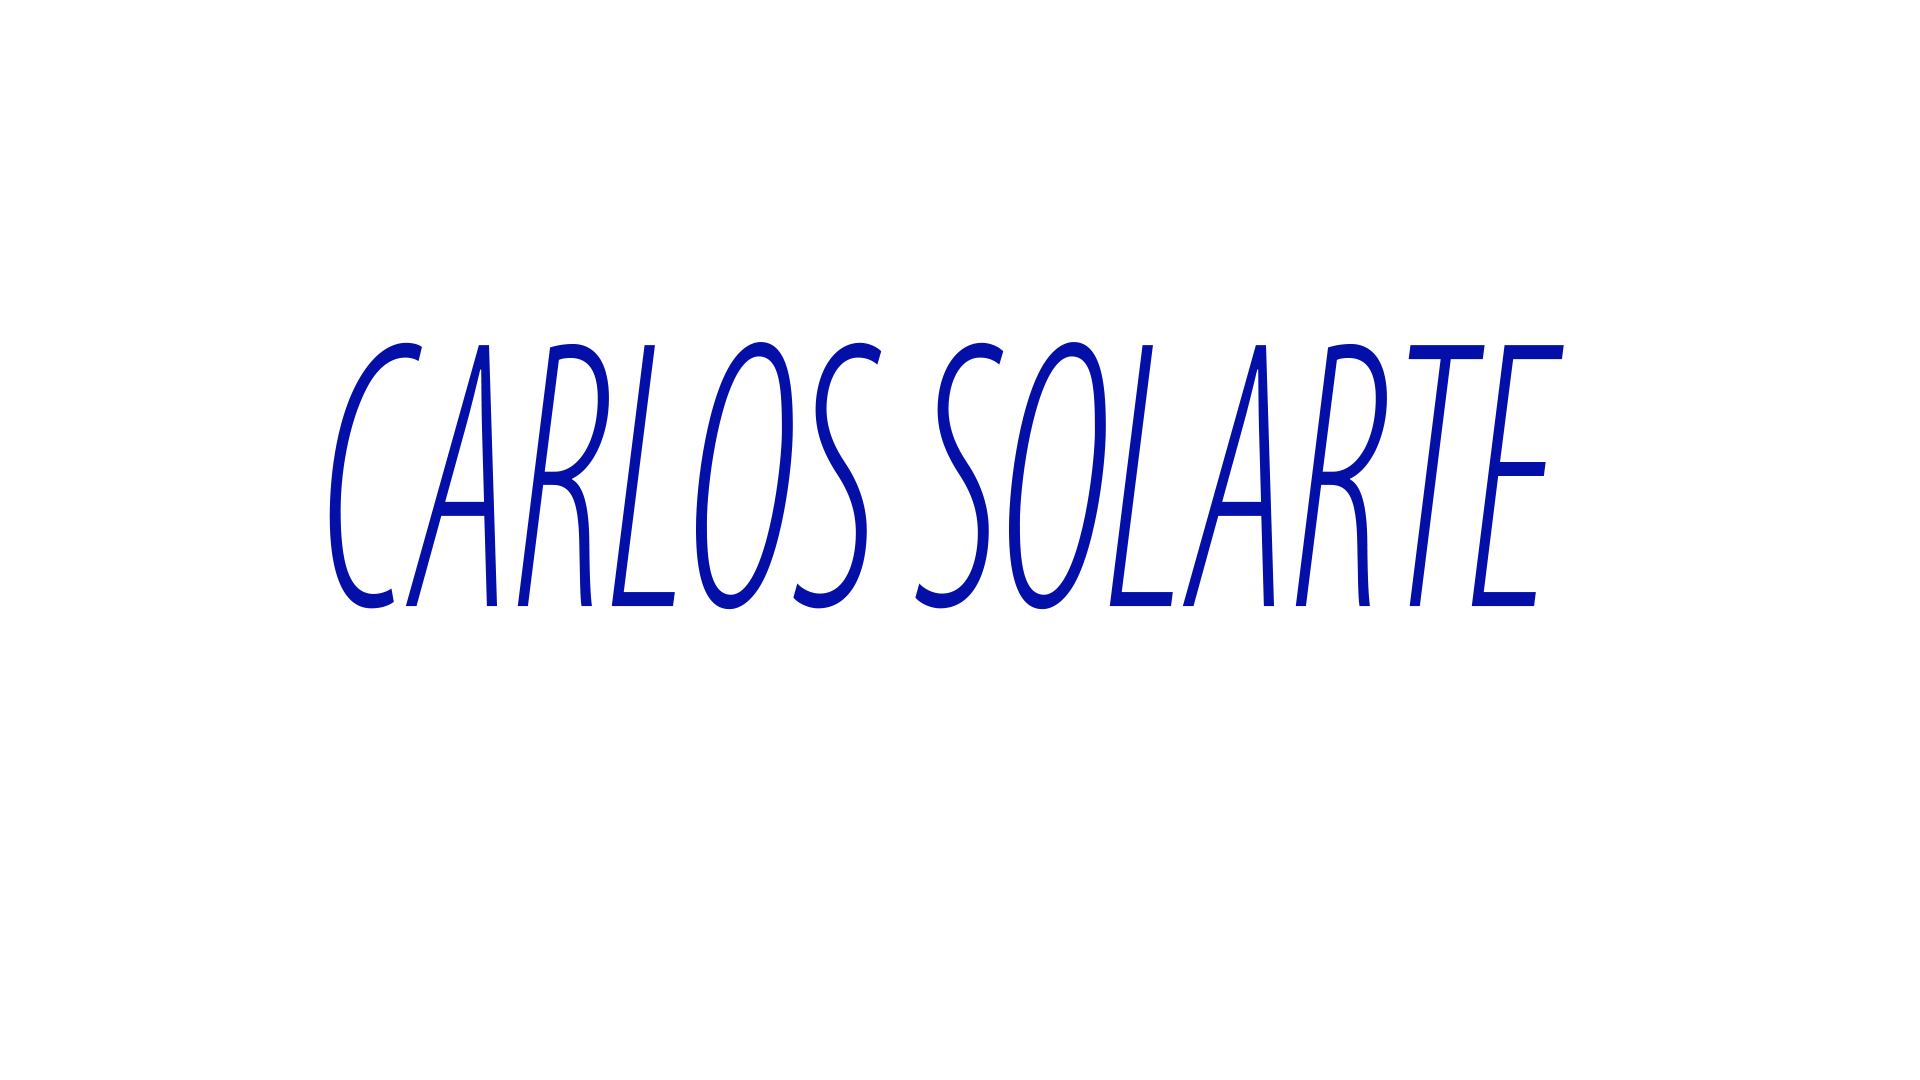 Carlos Solarte